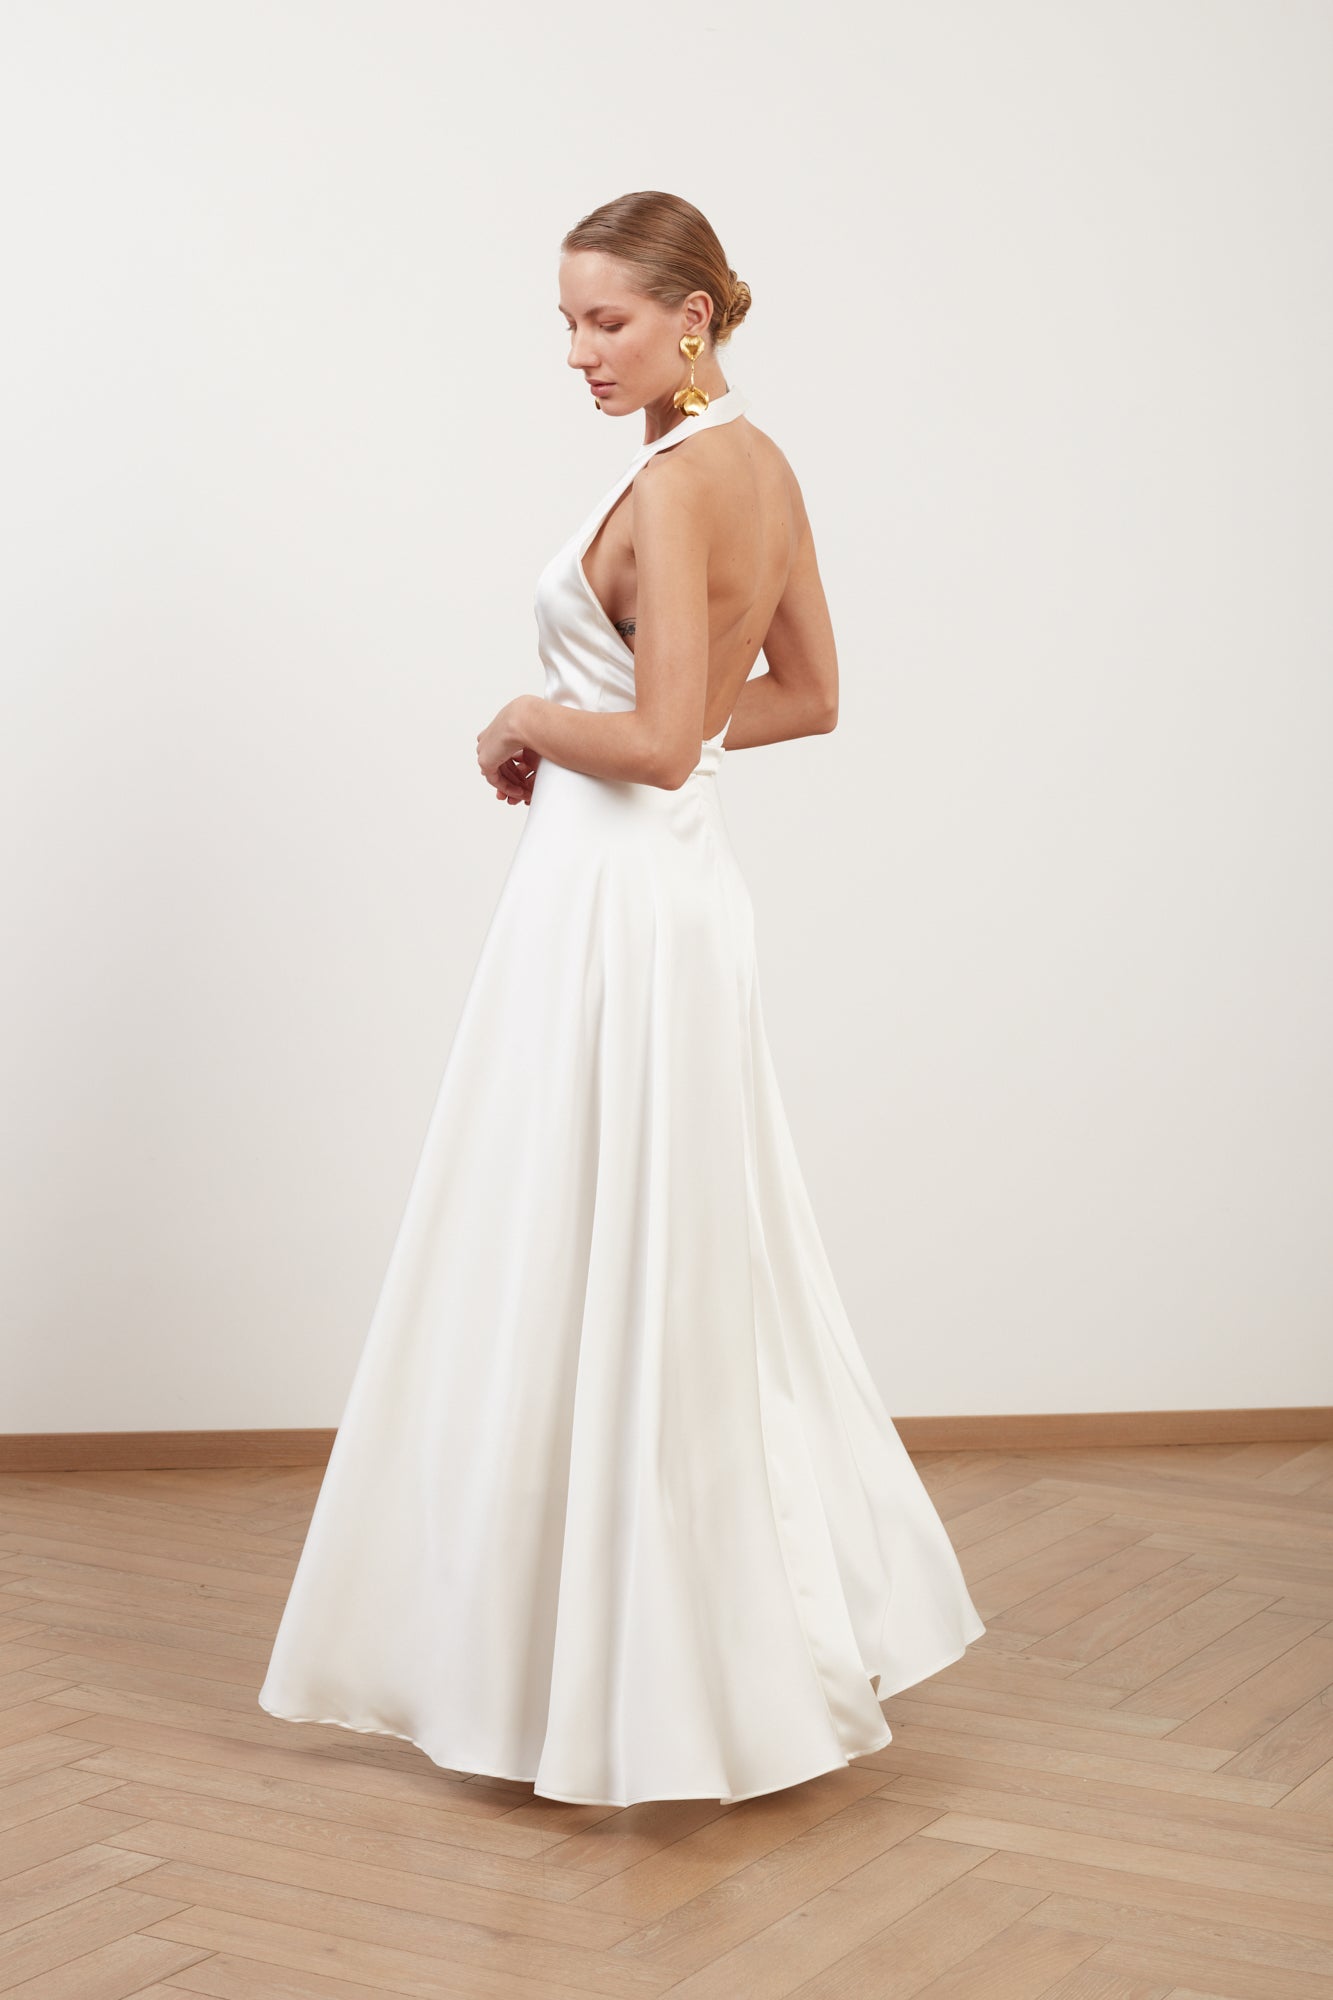 MAISSA white satin halter neck A-line wedding gown